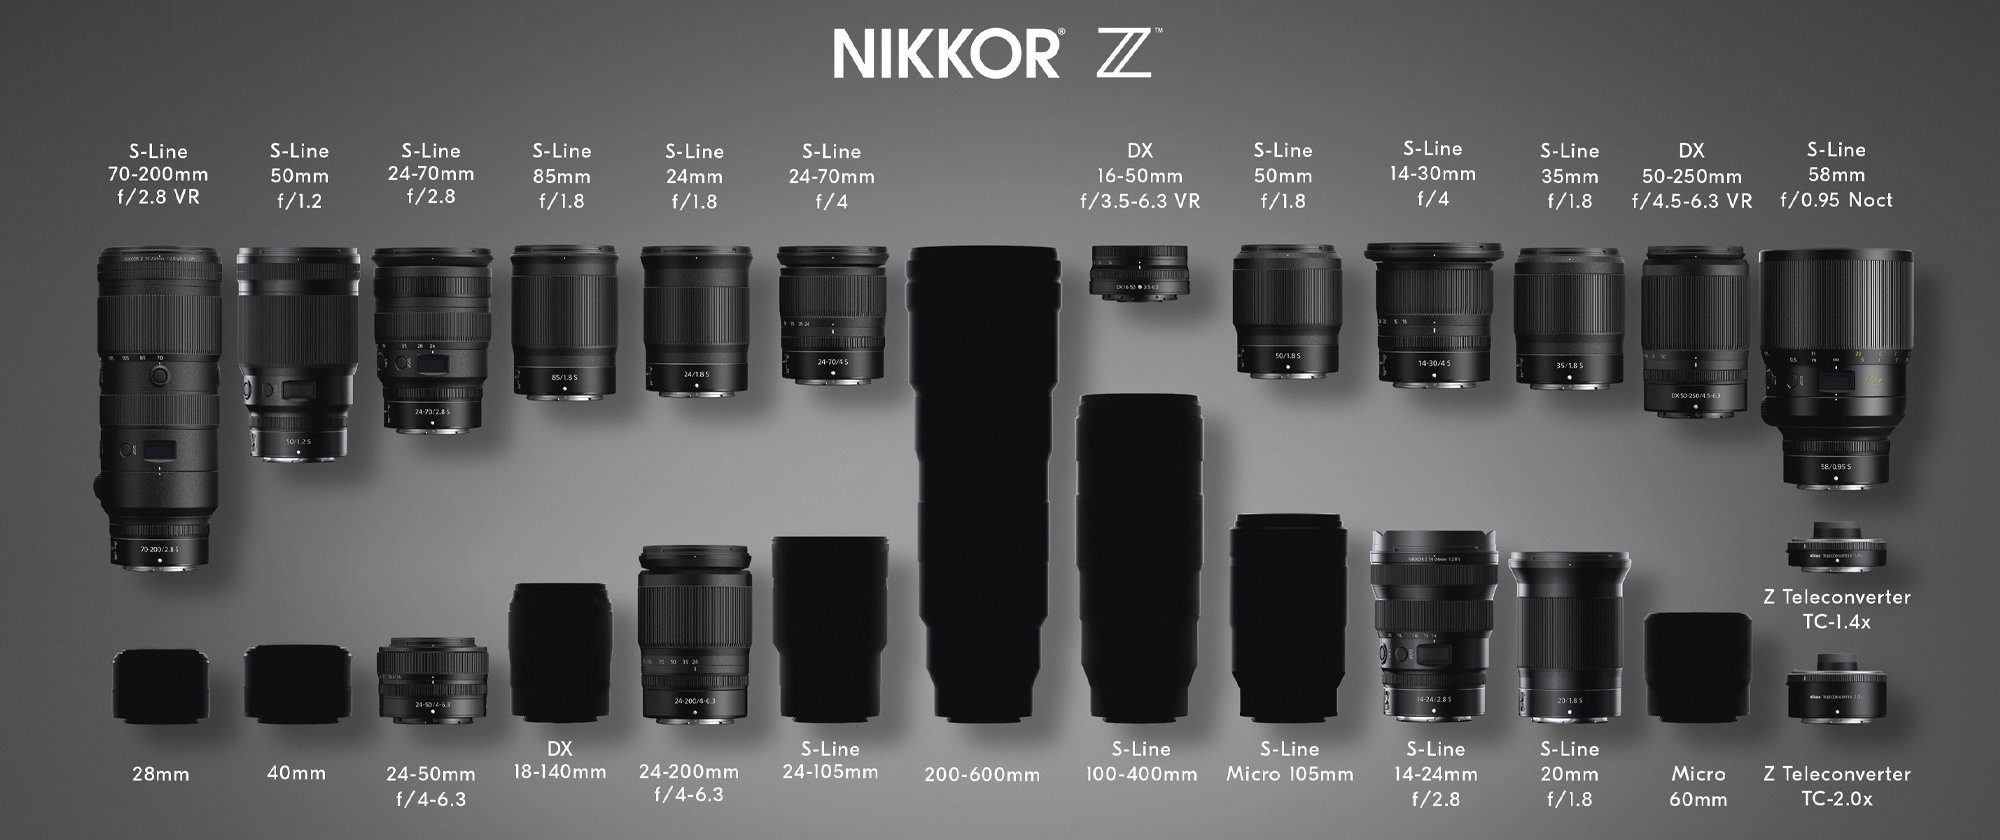 Телеобъектив для Nikon z6 600